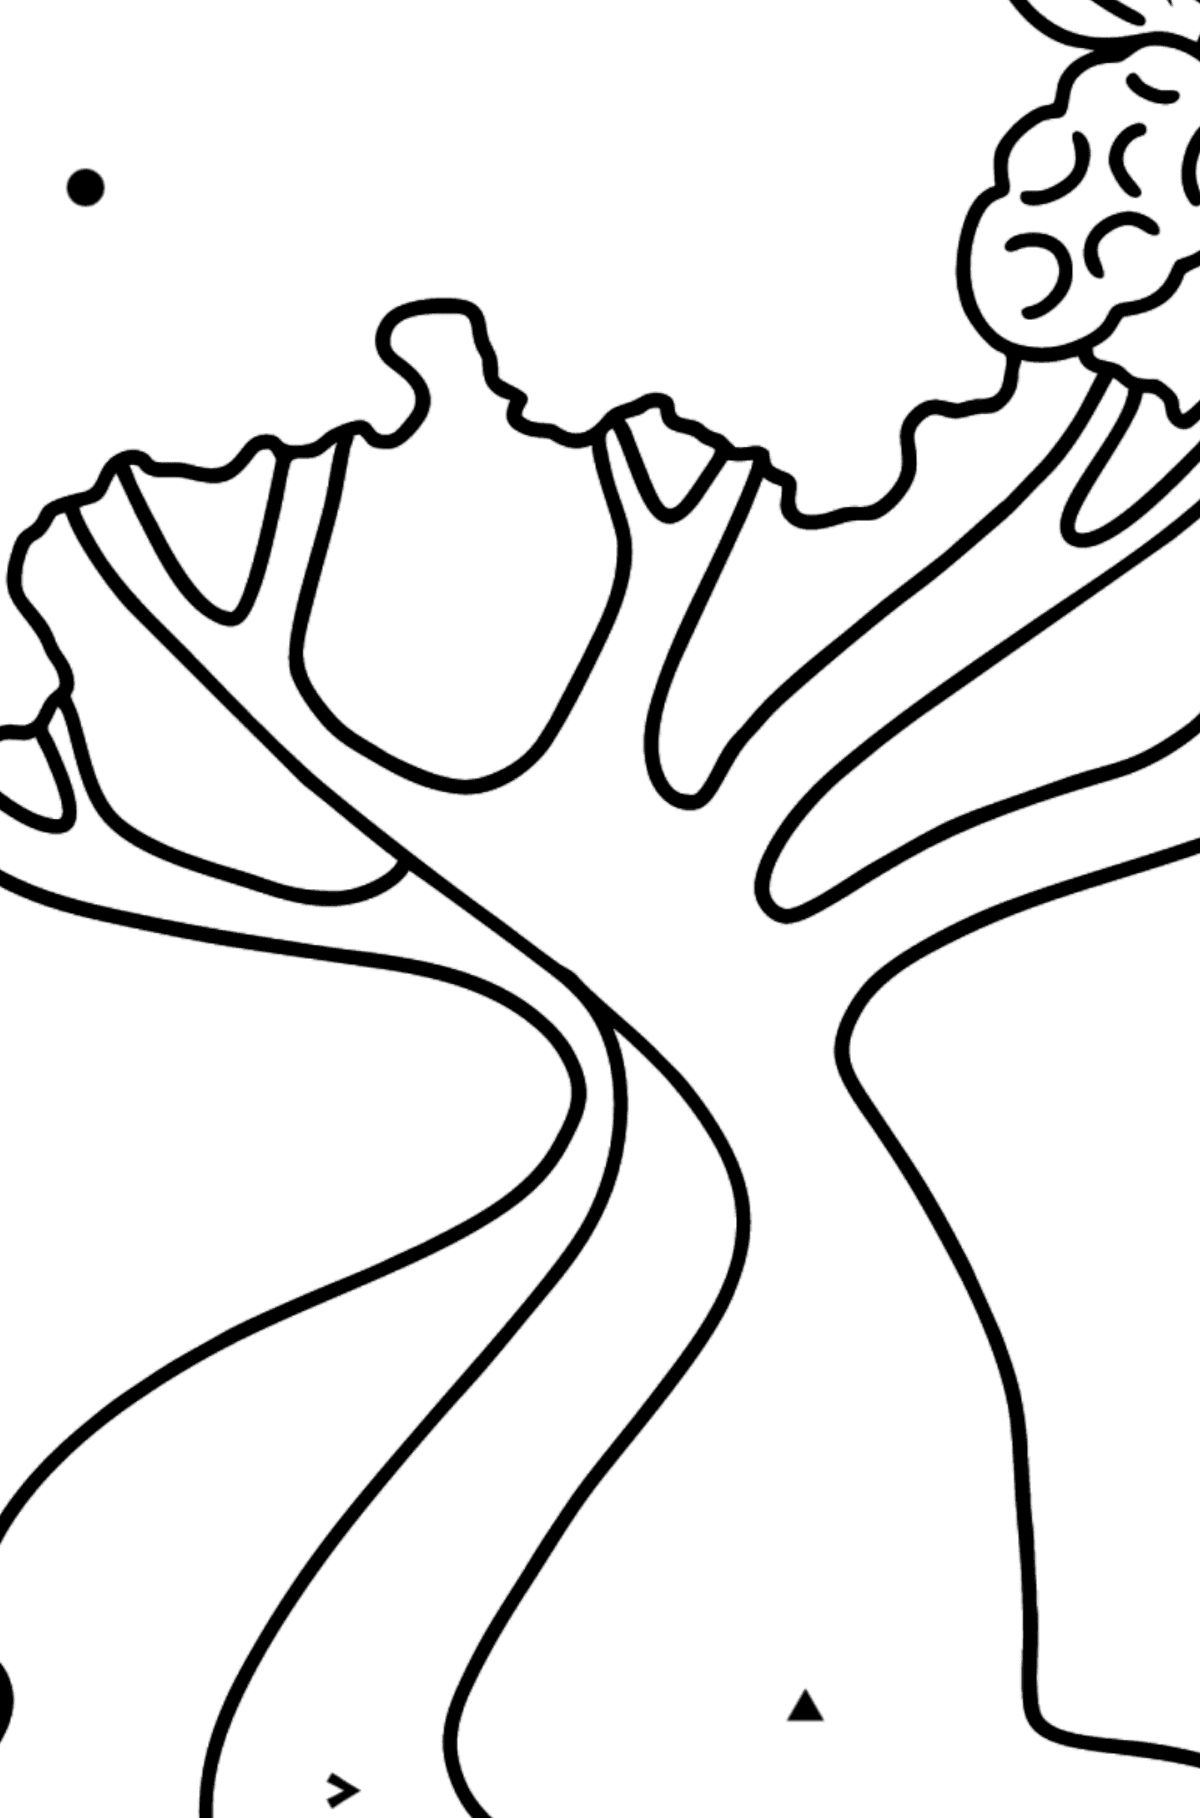 Dibujo de Árbol de algodón para colorear - Colorear por Símbolos para Niños